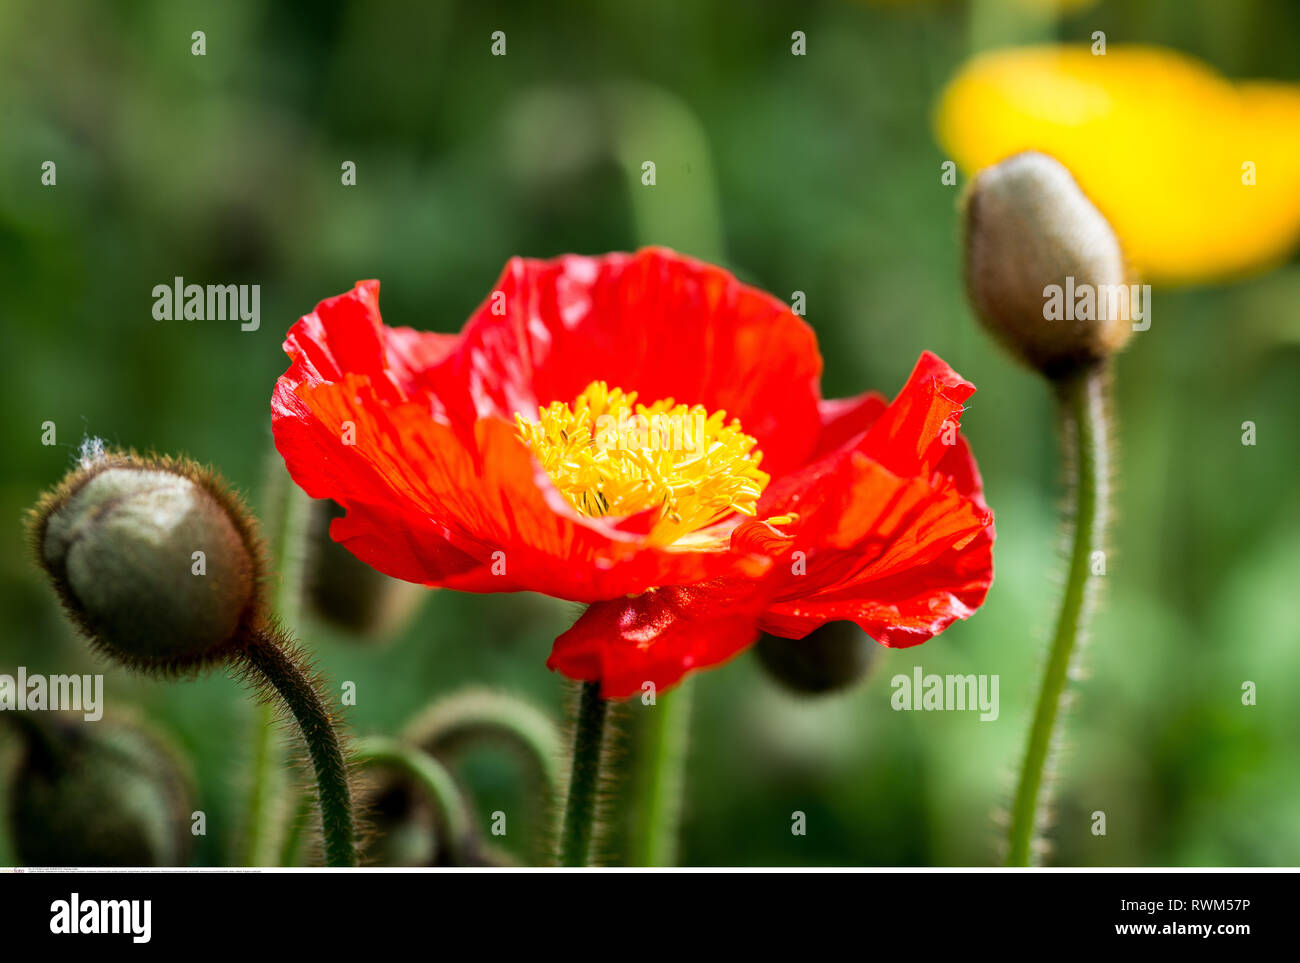 La botanica, Isola papavero, attenzione! Per Greetingcard-Use / Postcard-Use nei Paesi di lingua tedesca talune restrizioni possono applicare Foto Stock